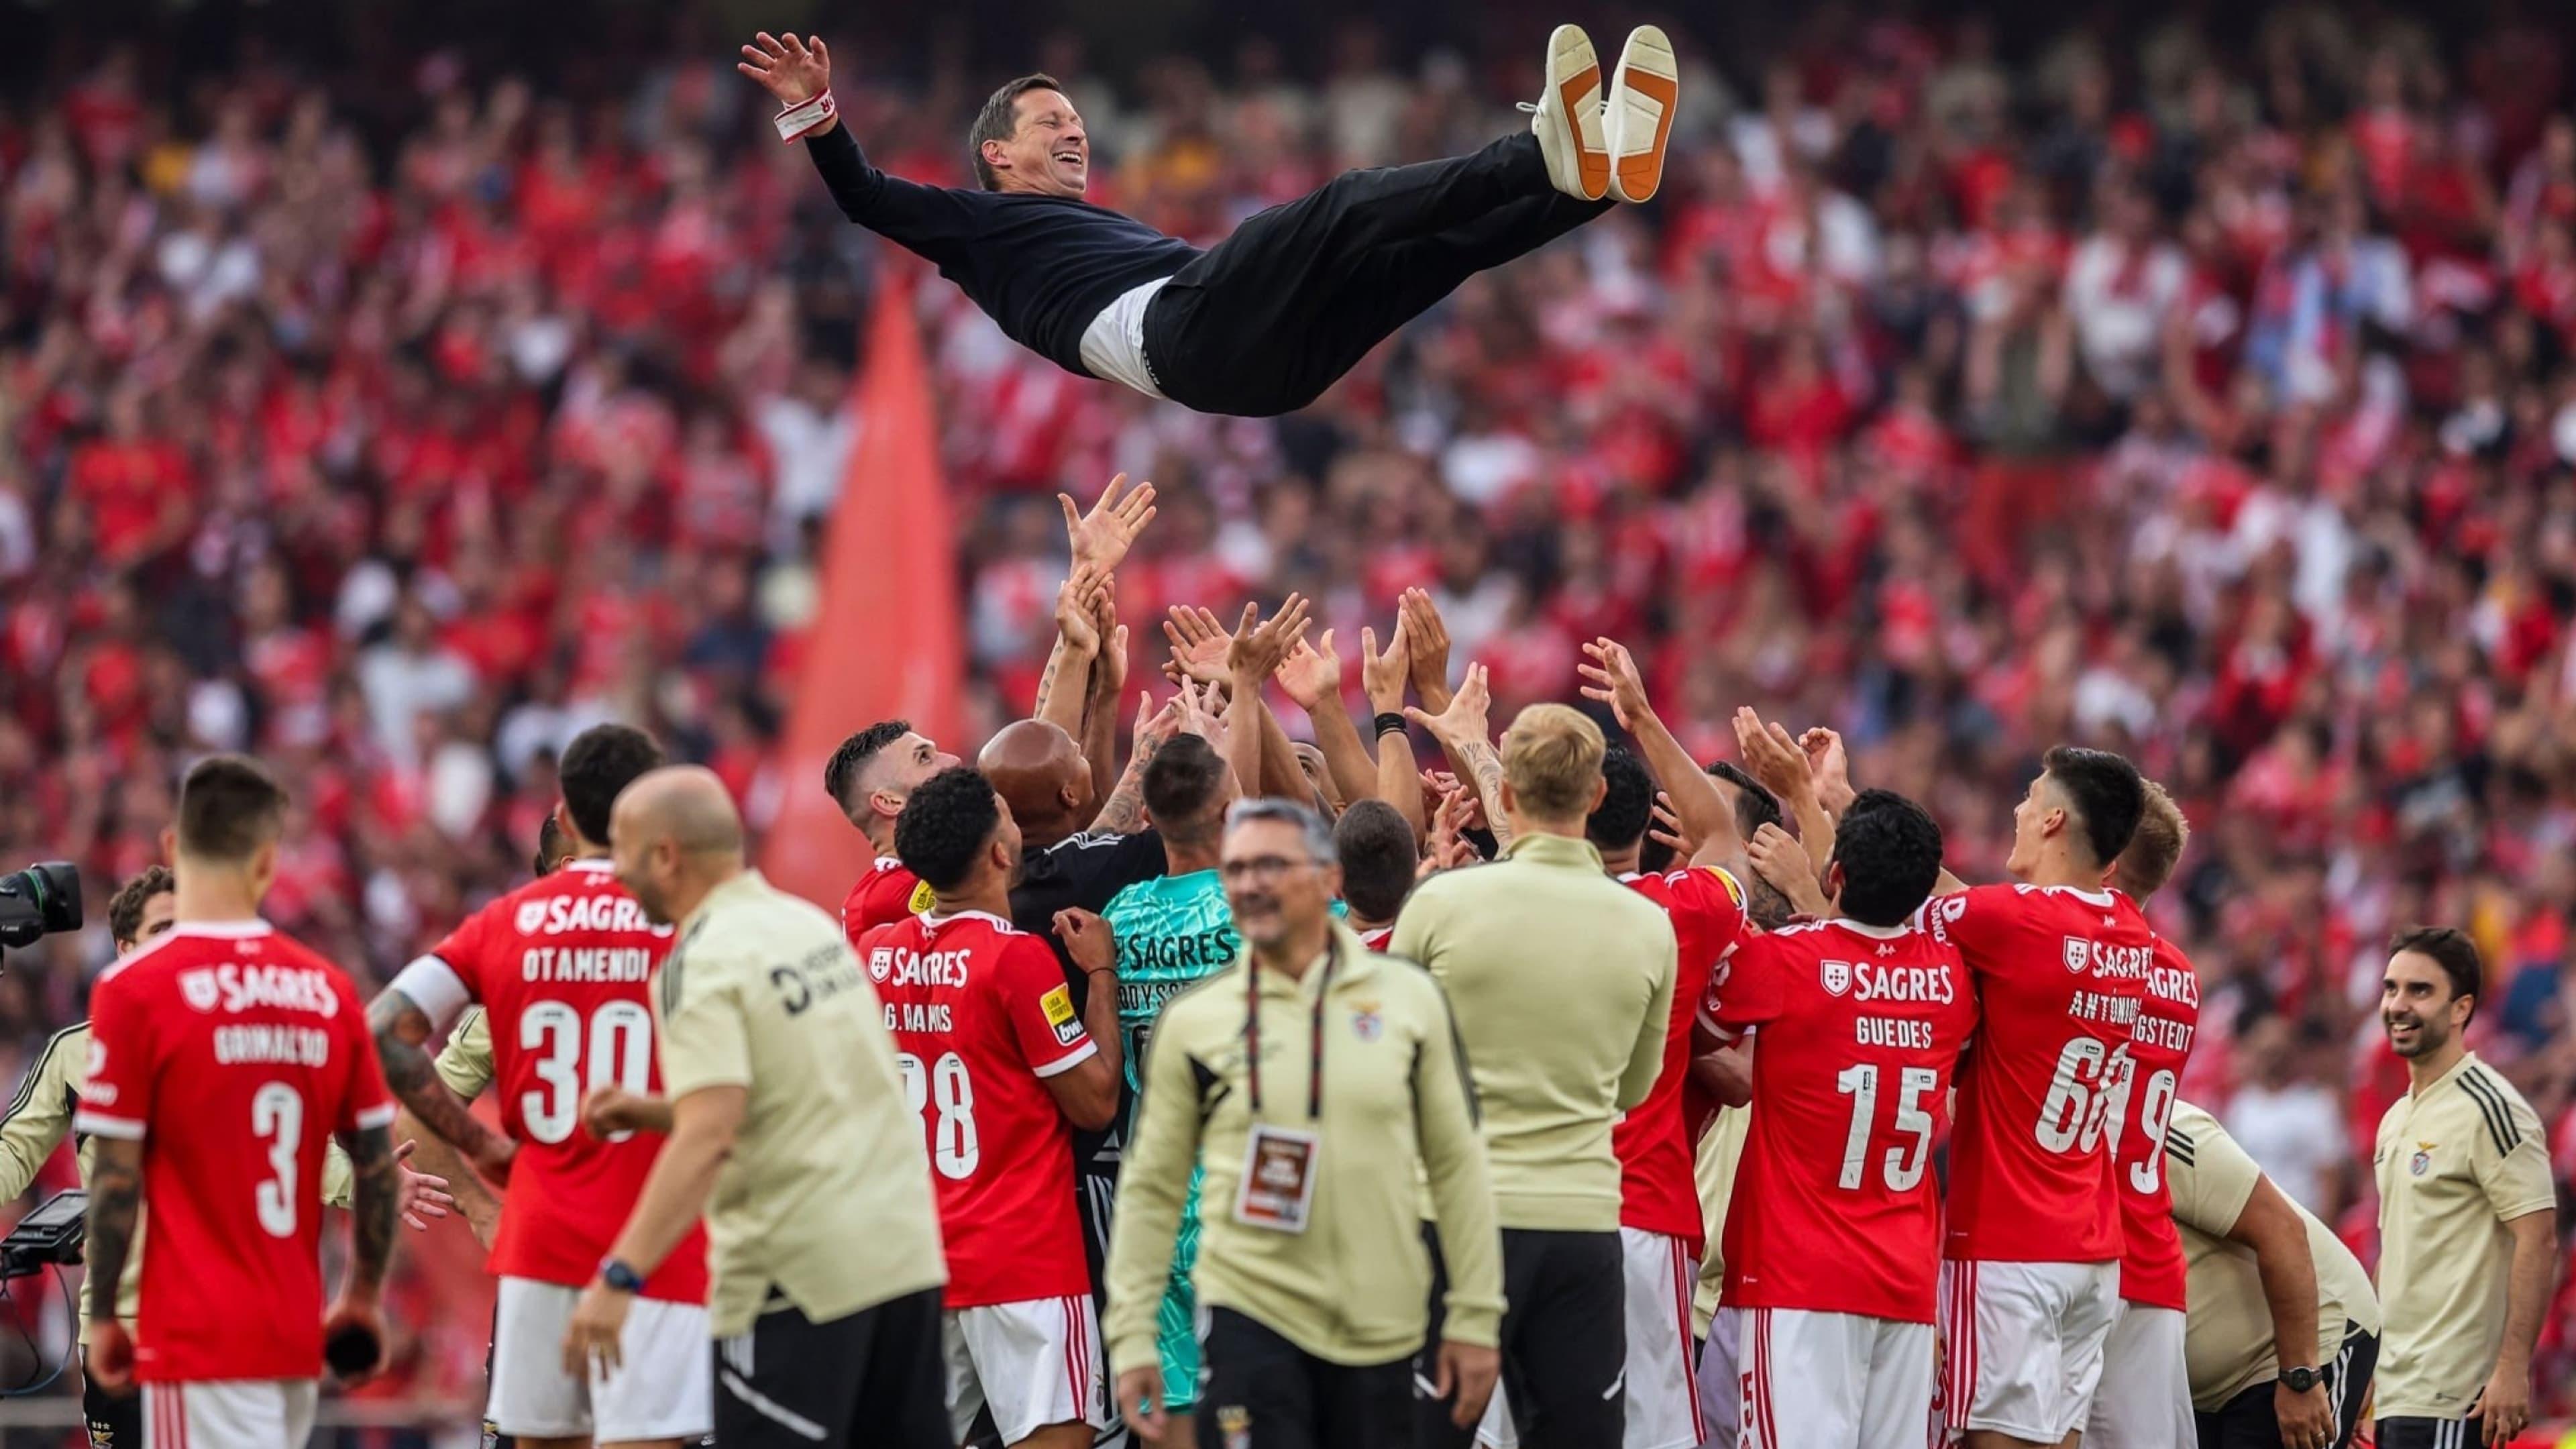 Eu Amo o Benfica backdrop